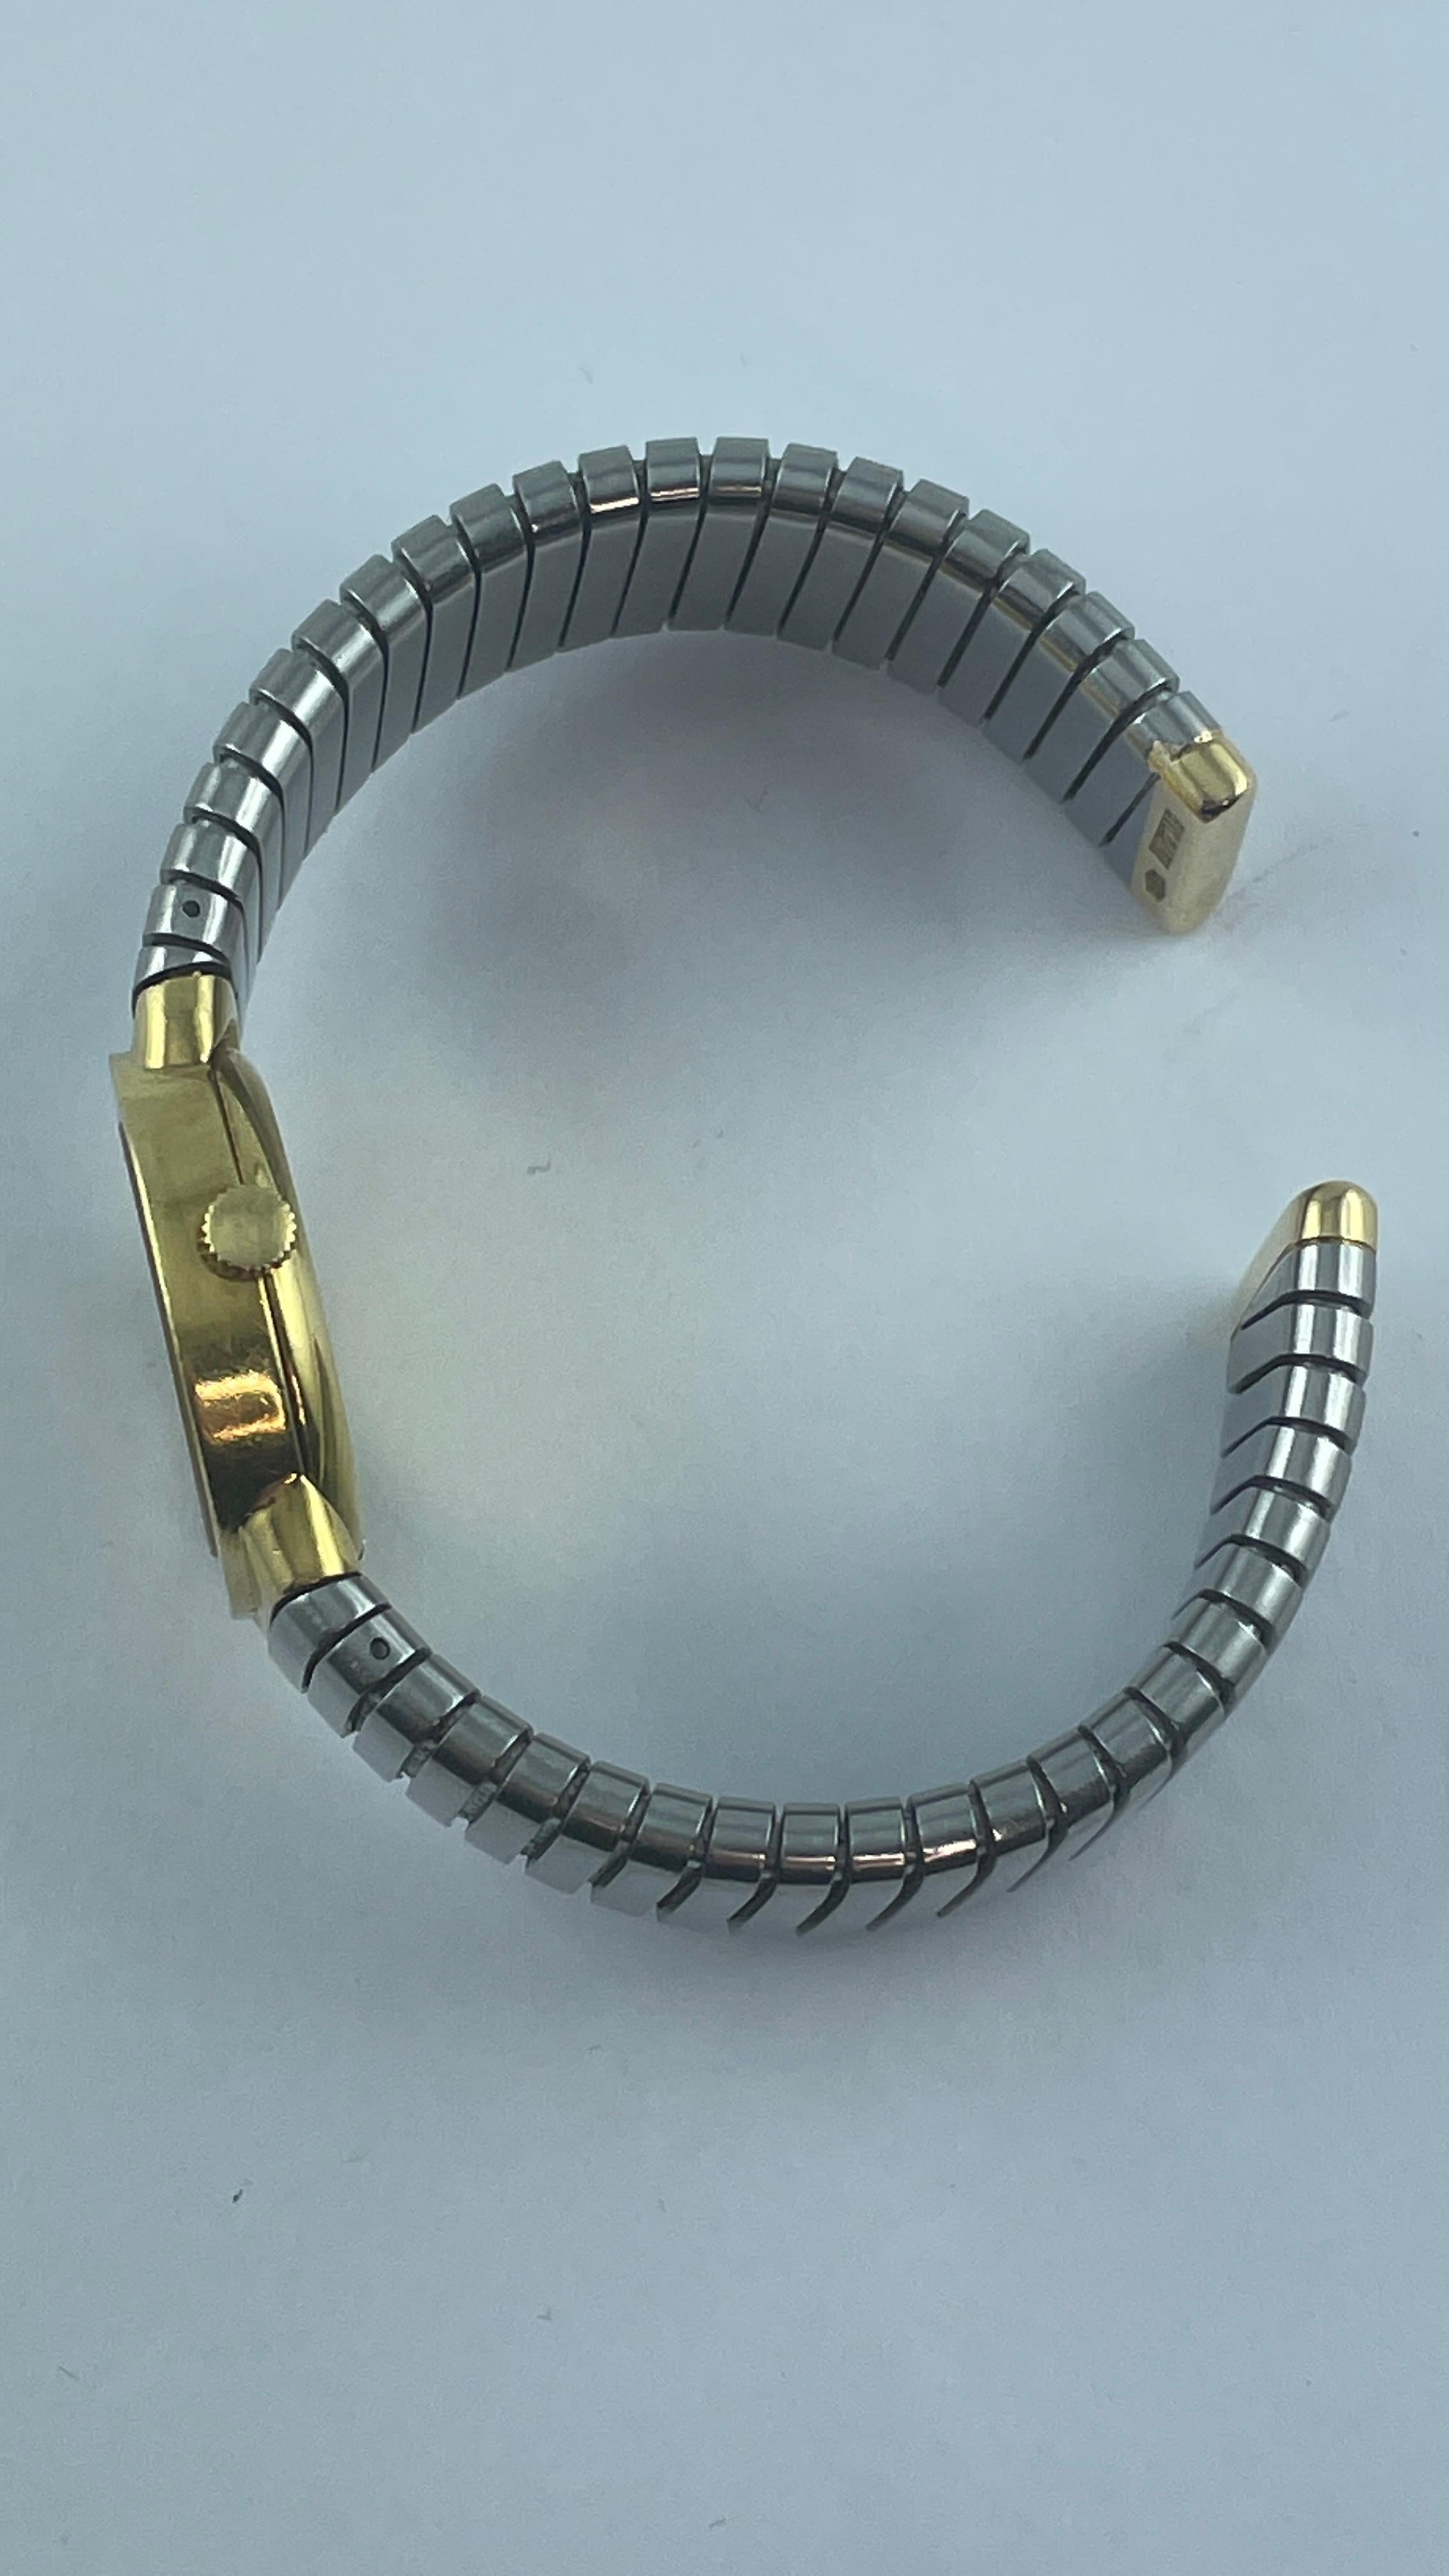 Montre classique à bracelet Tubogas en or 18k et acier de Bvlgari, avec cadran noir et mouvement à remontage manuel. 
Le bracelet se fixe à un poignet d'environ 7'', le boîtier fait 23mm de diamètre, le bracelet fait 15mm de large. 